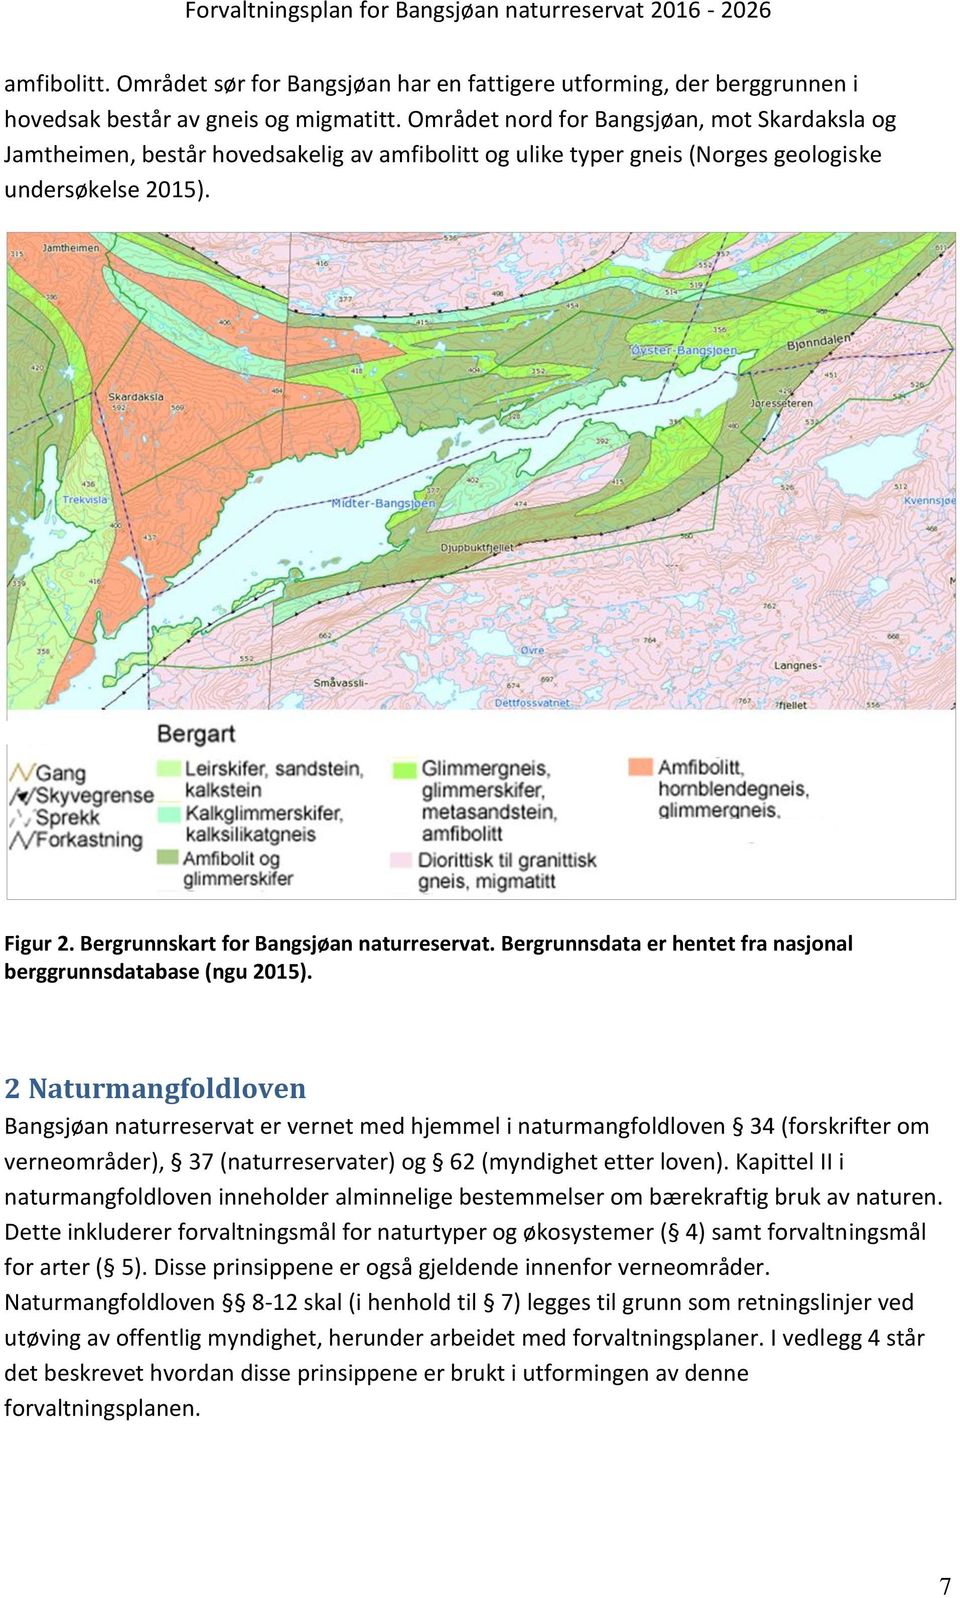 Bergrunnskart for Bangsjøan naturreservat. Bergrunnsdata er hentet fra nasjonal berggrunnsdatabase (ngu 2015).